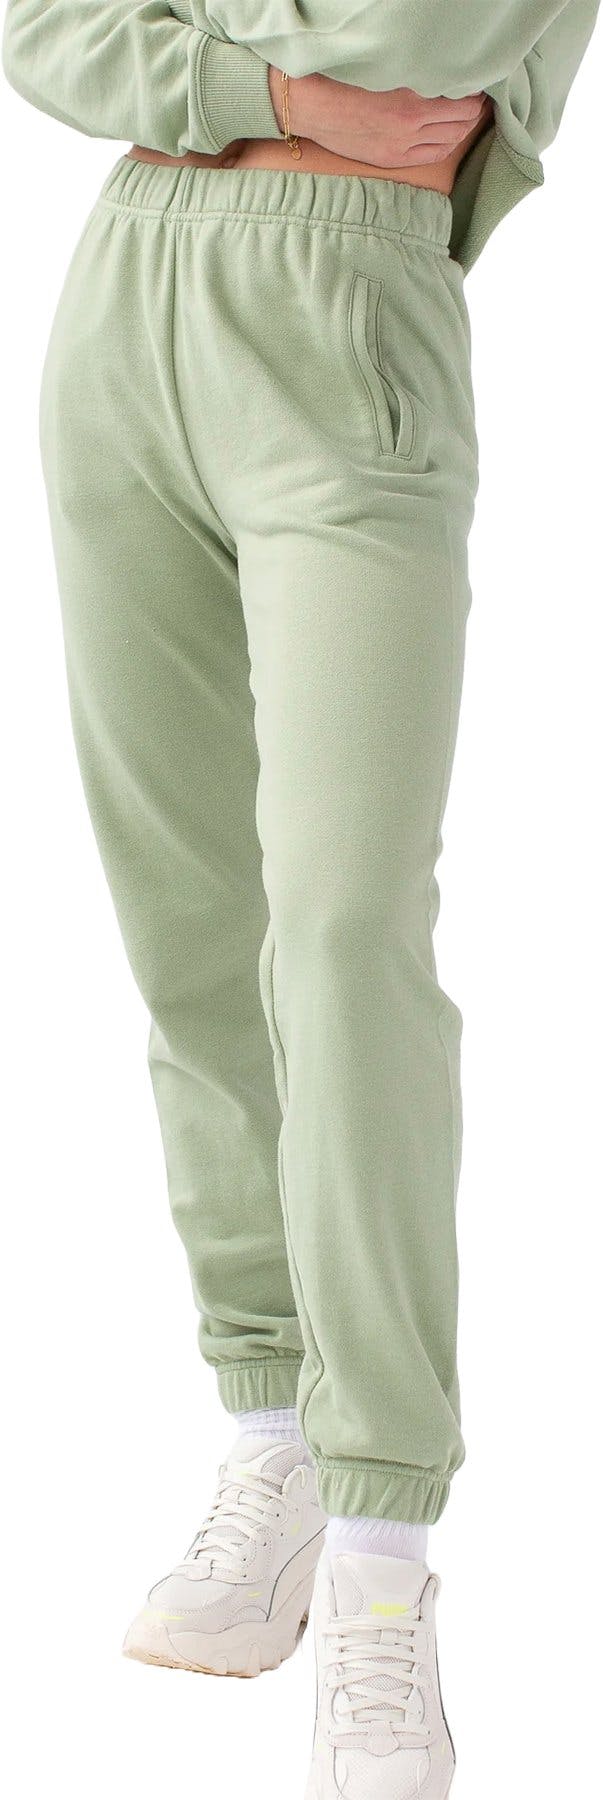 Numéro de l'image de la galerie de produits 2 pour le produit Pantalon de jogging léger - Femme